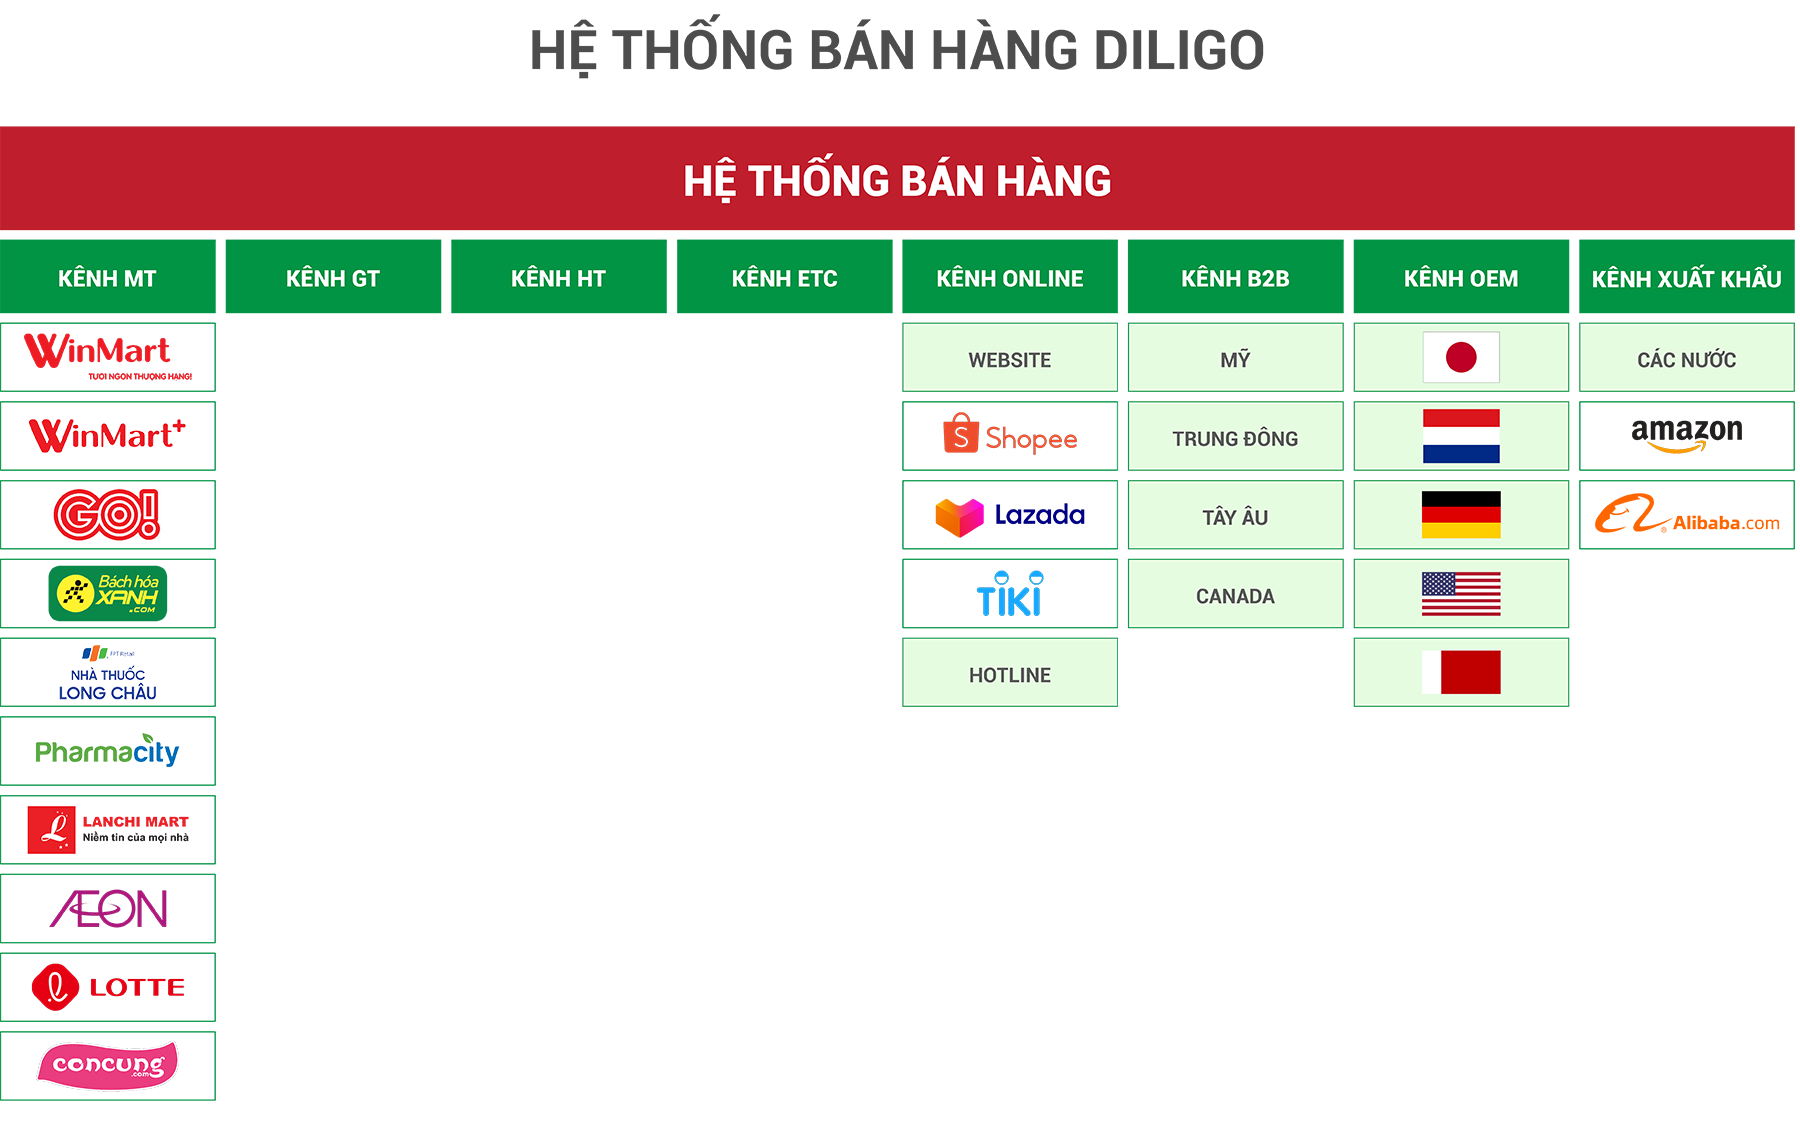 He thong ban hang 3